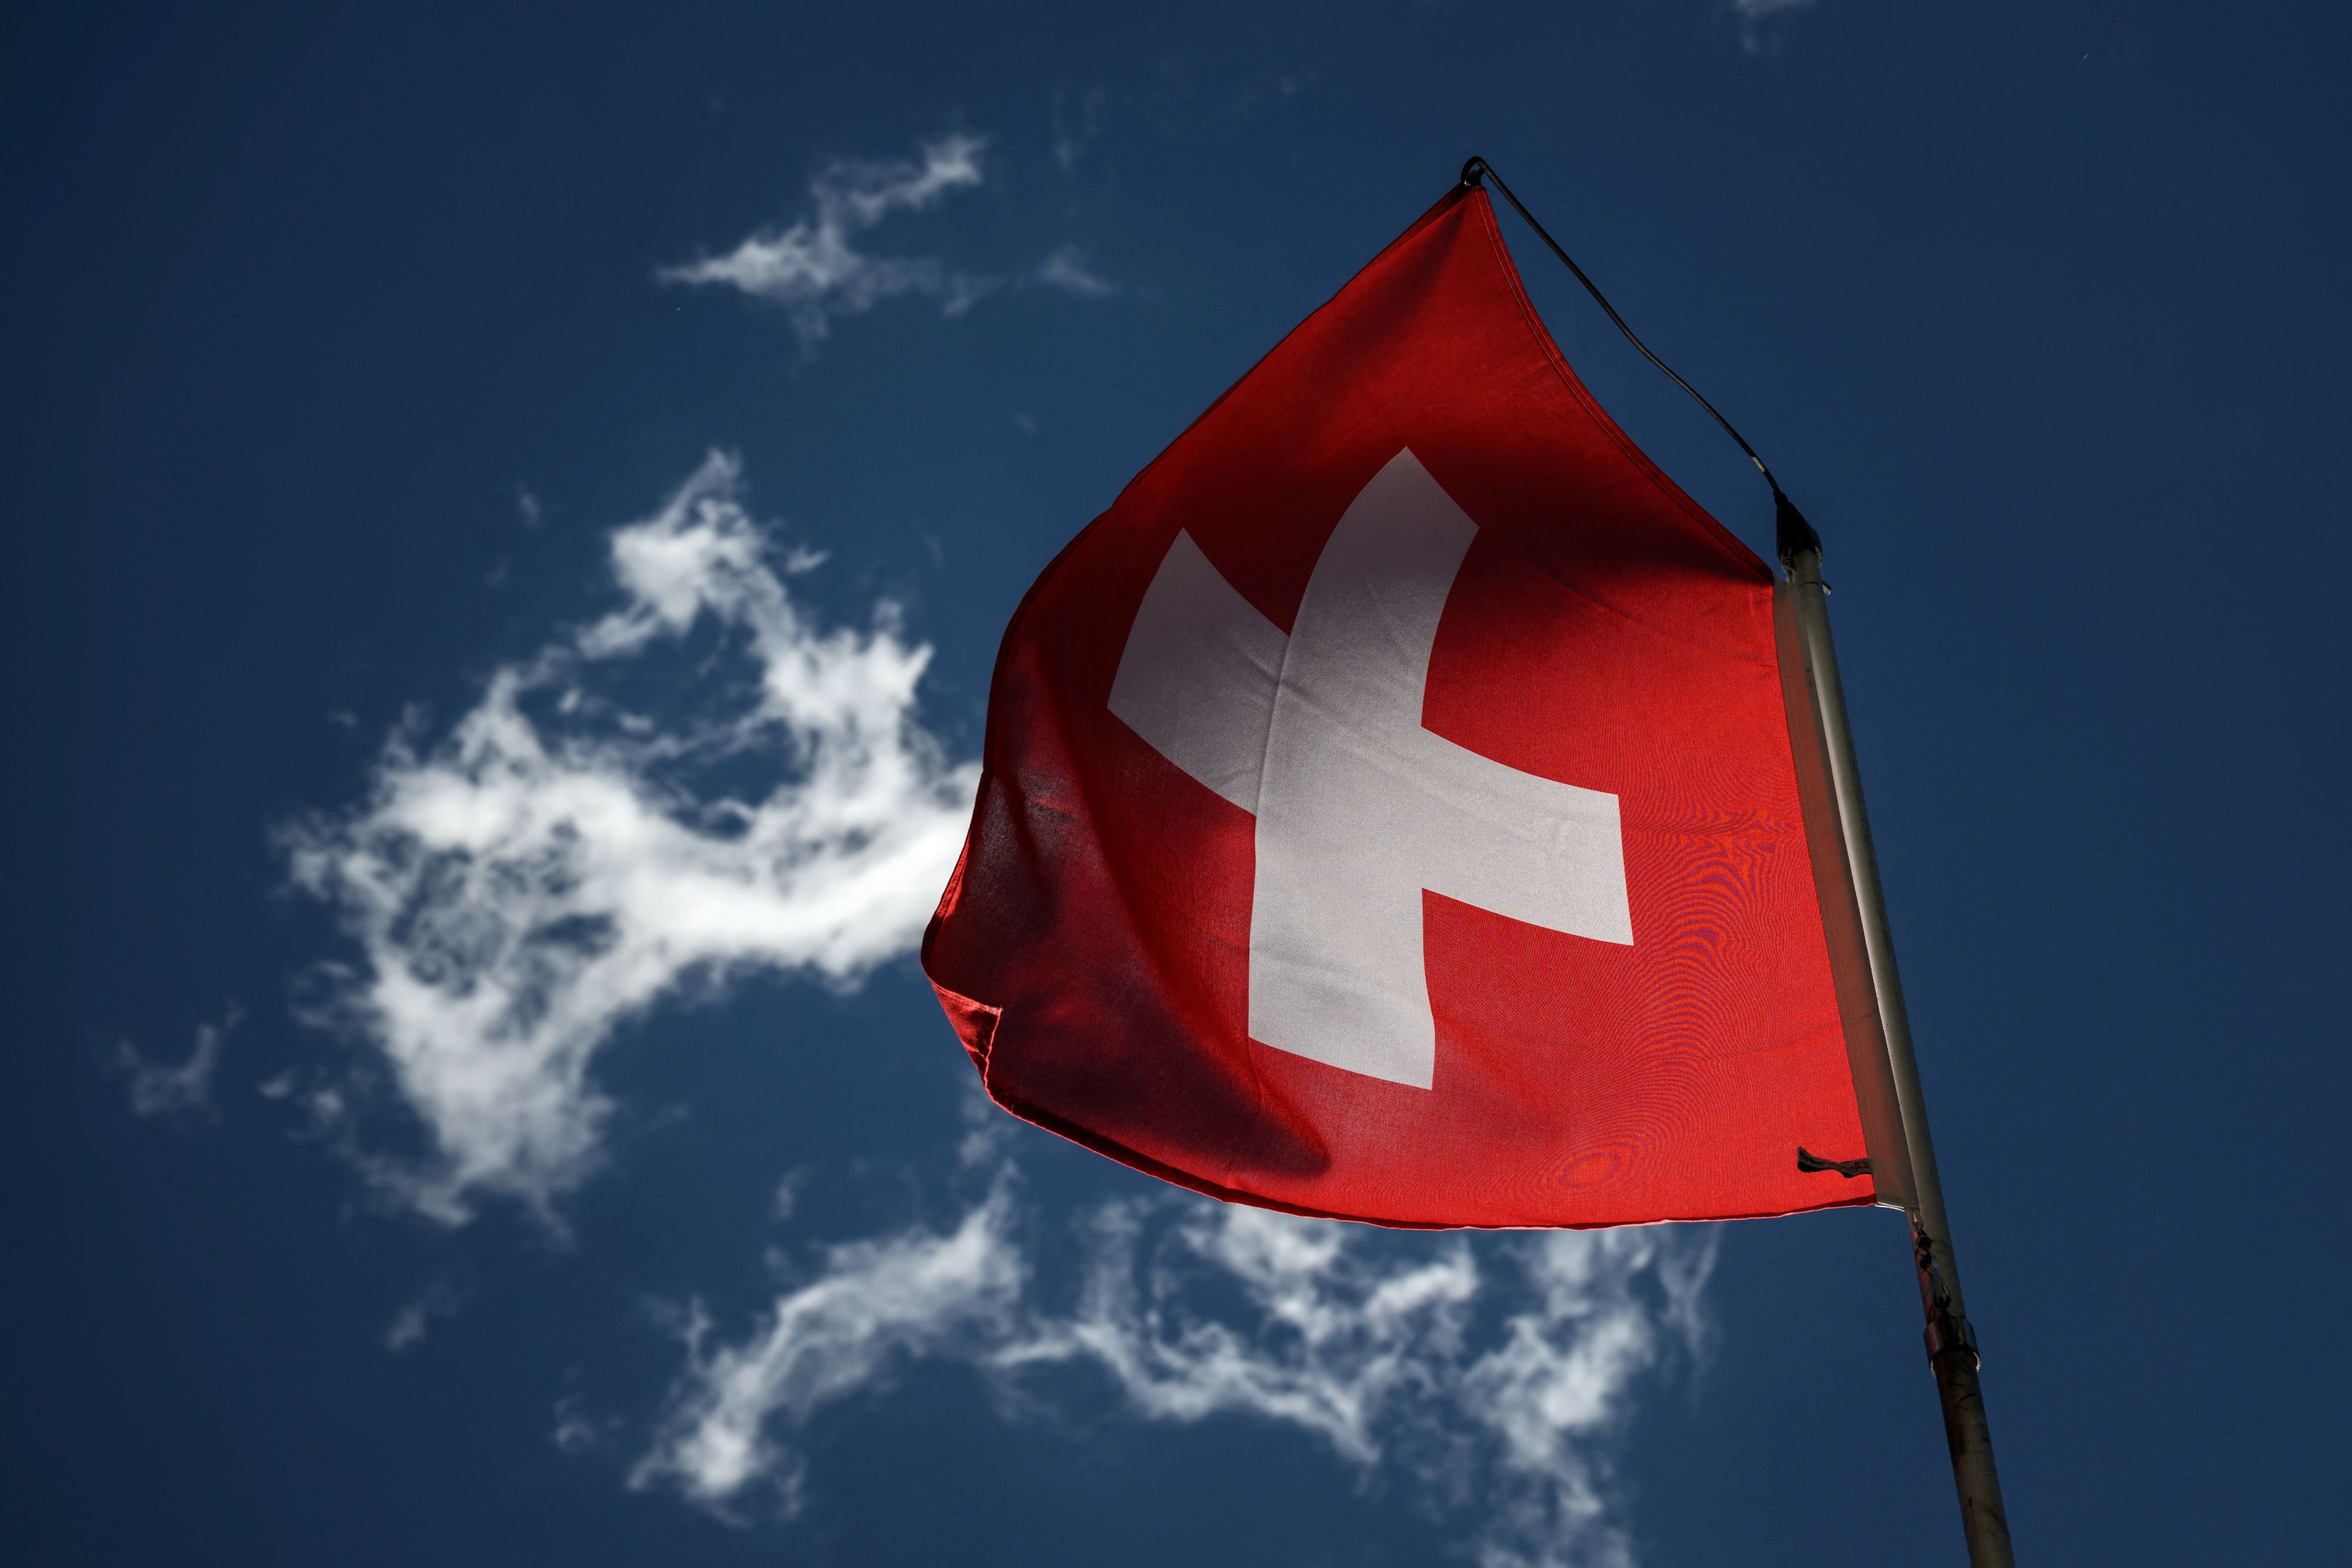 Des enquêtes en Suisse visent une agence accusée d'espionnage